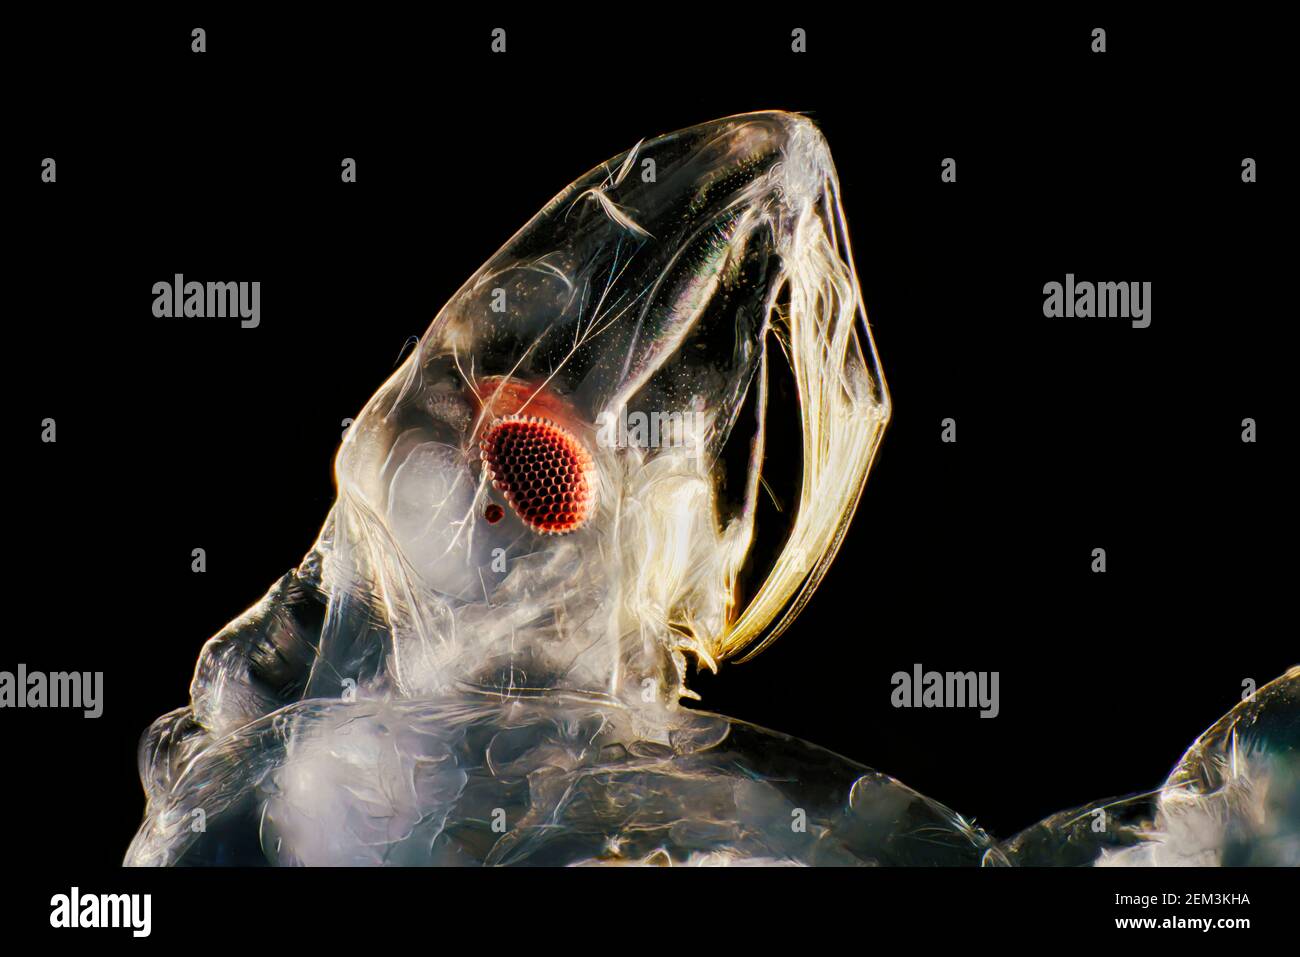 Midge fantôme (Chaoborus spec.), tête d'une larve, image de microscope à champ sombre, grossissement : x12 par rapport à 36 mm, Allemagne Banque D'Images